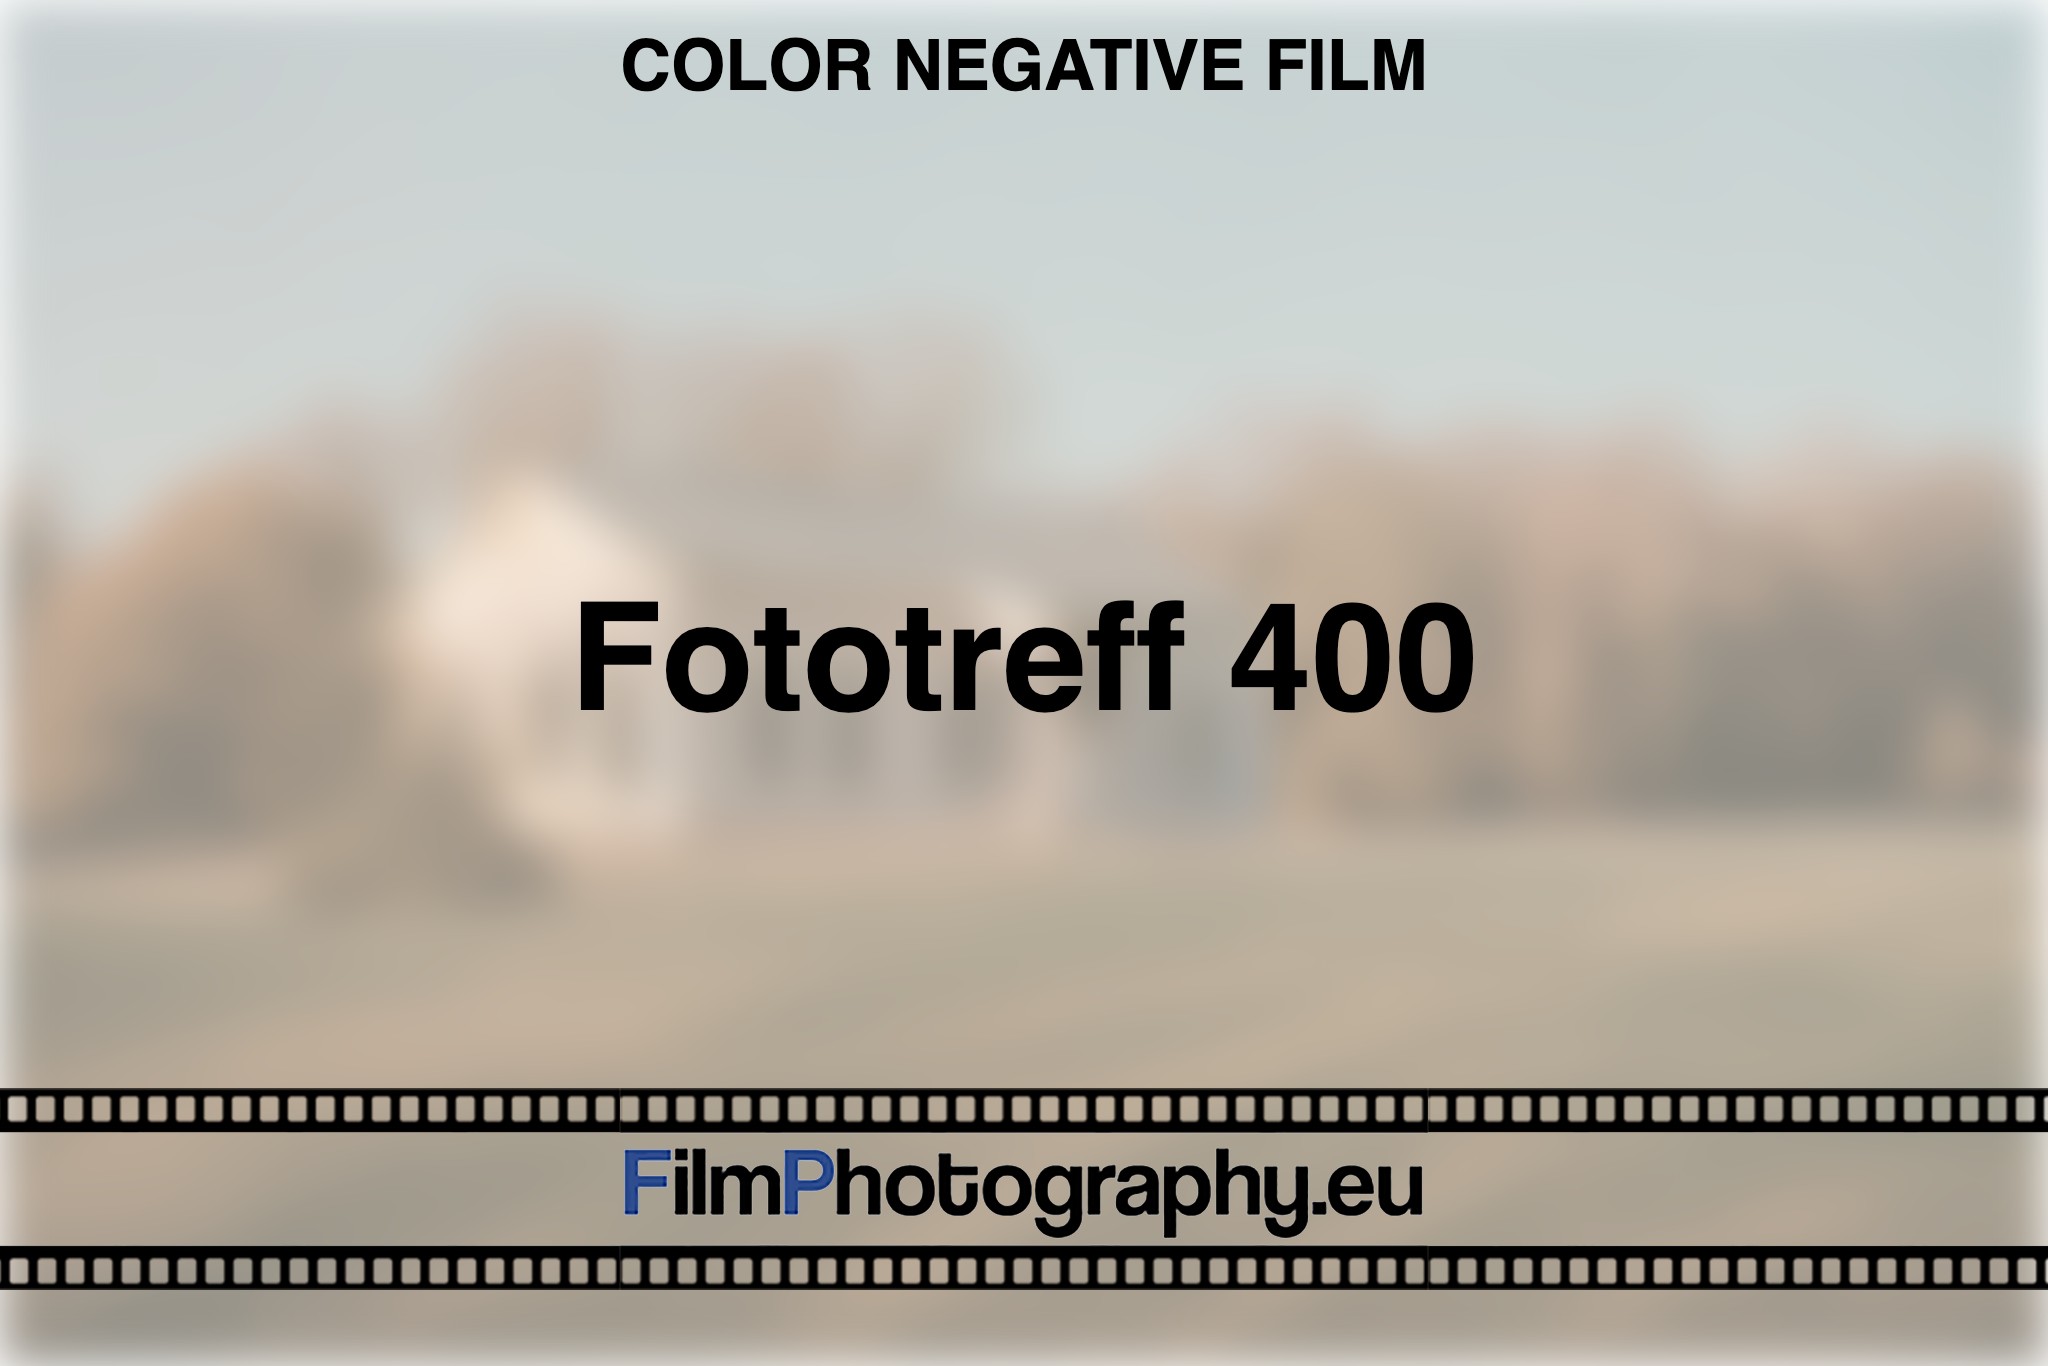 fototreff-400-color-negative-film-bnv